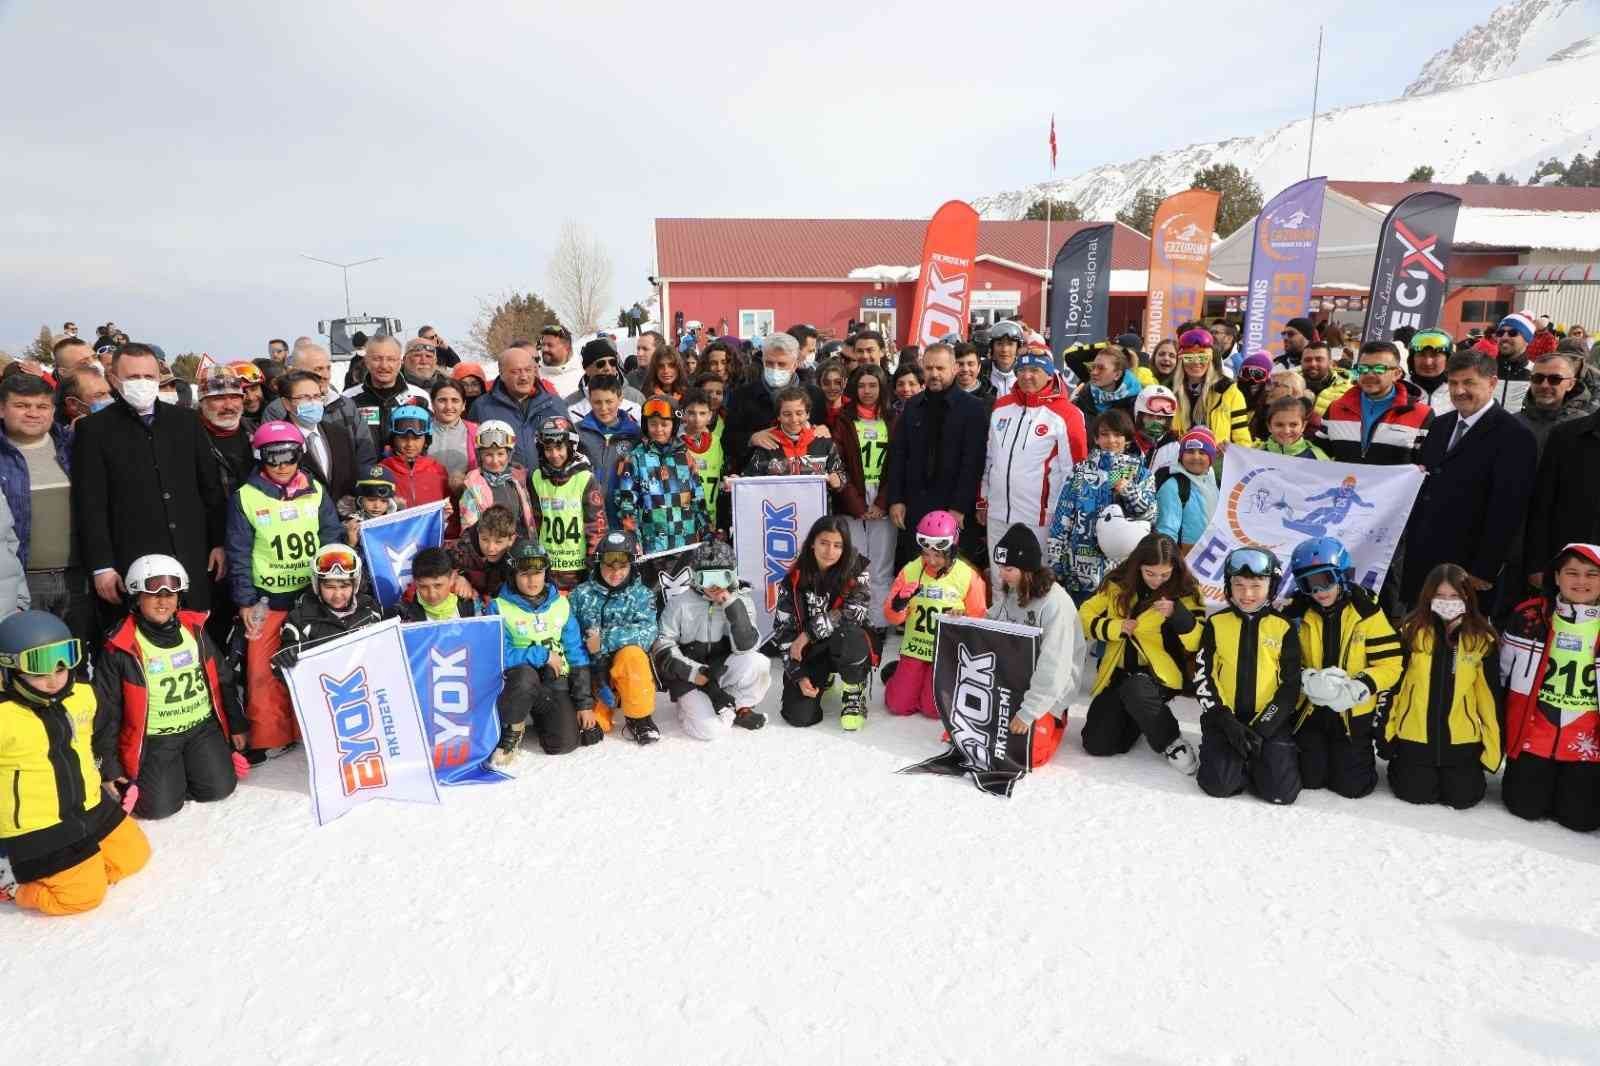 Snowboard yarışlarında dereceye giren sporcular ödüllendirildi #erzincan